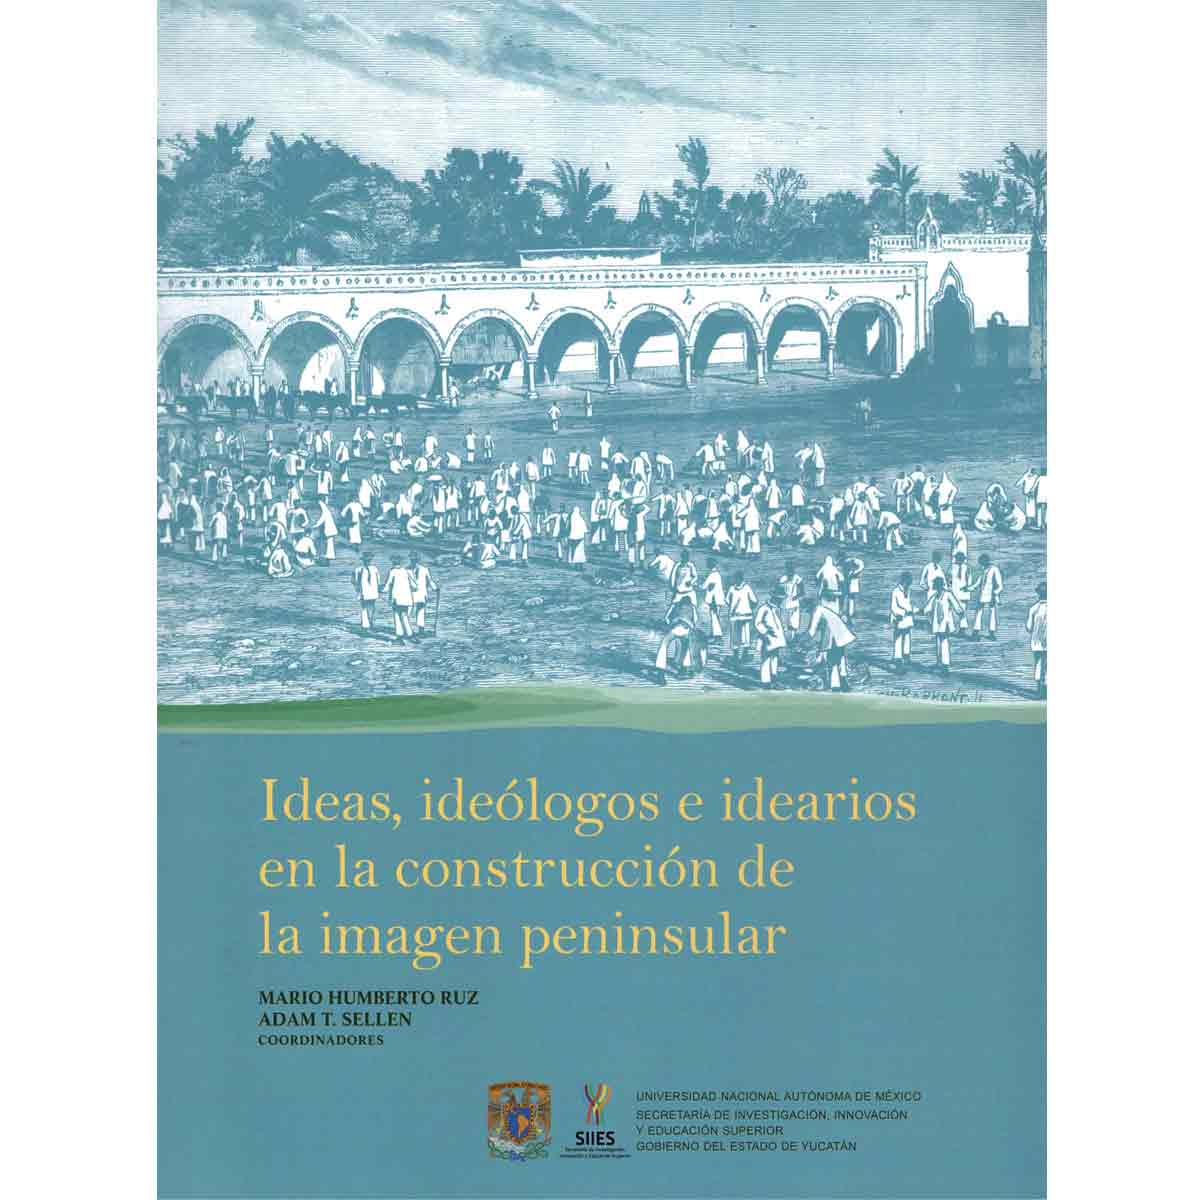 IDEAS, IDEÓLOGOS E IDEARIOS EN LA CONSTRUCCIÓN DE LA IMAGEN PENINSULAR